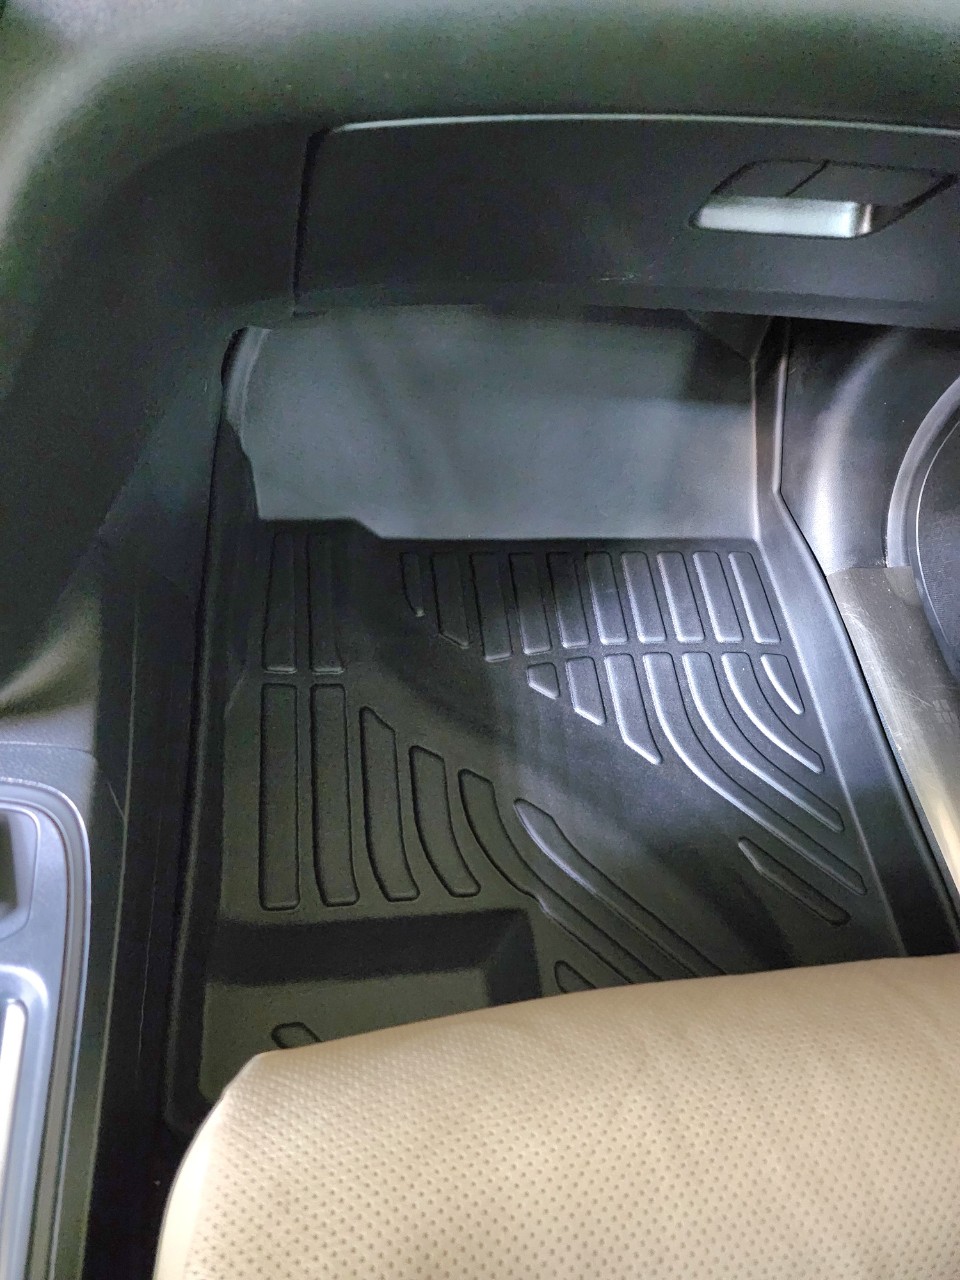 Thảm lót sàn xe ô tô Honda CRV 2012 đến 2017 Nhãn hiệu Macsim chất liệu nhựa TPV cao cấp màu đen.